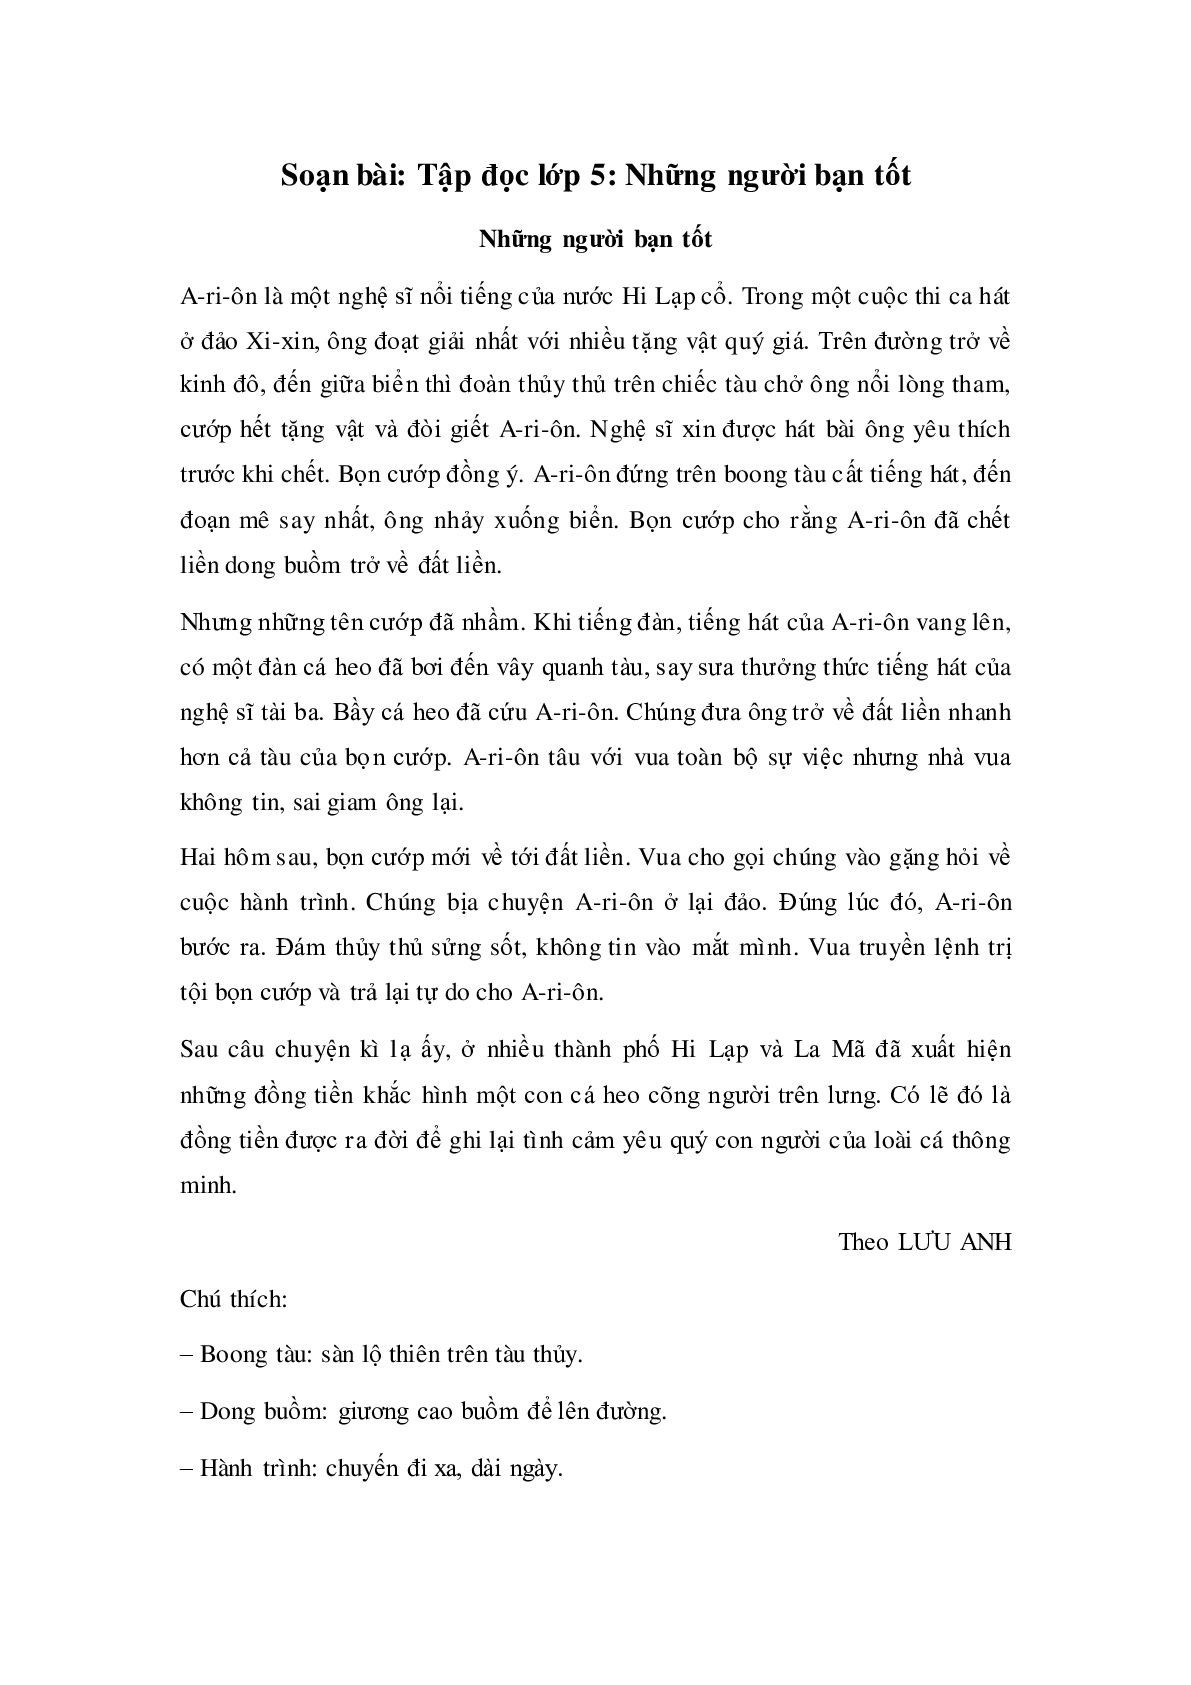 Soạn Tiếng Việt lớp 5: Tập đọc: Những người bạn tốt mới nhất. (trang 1)